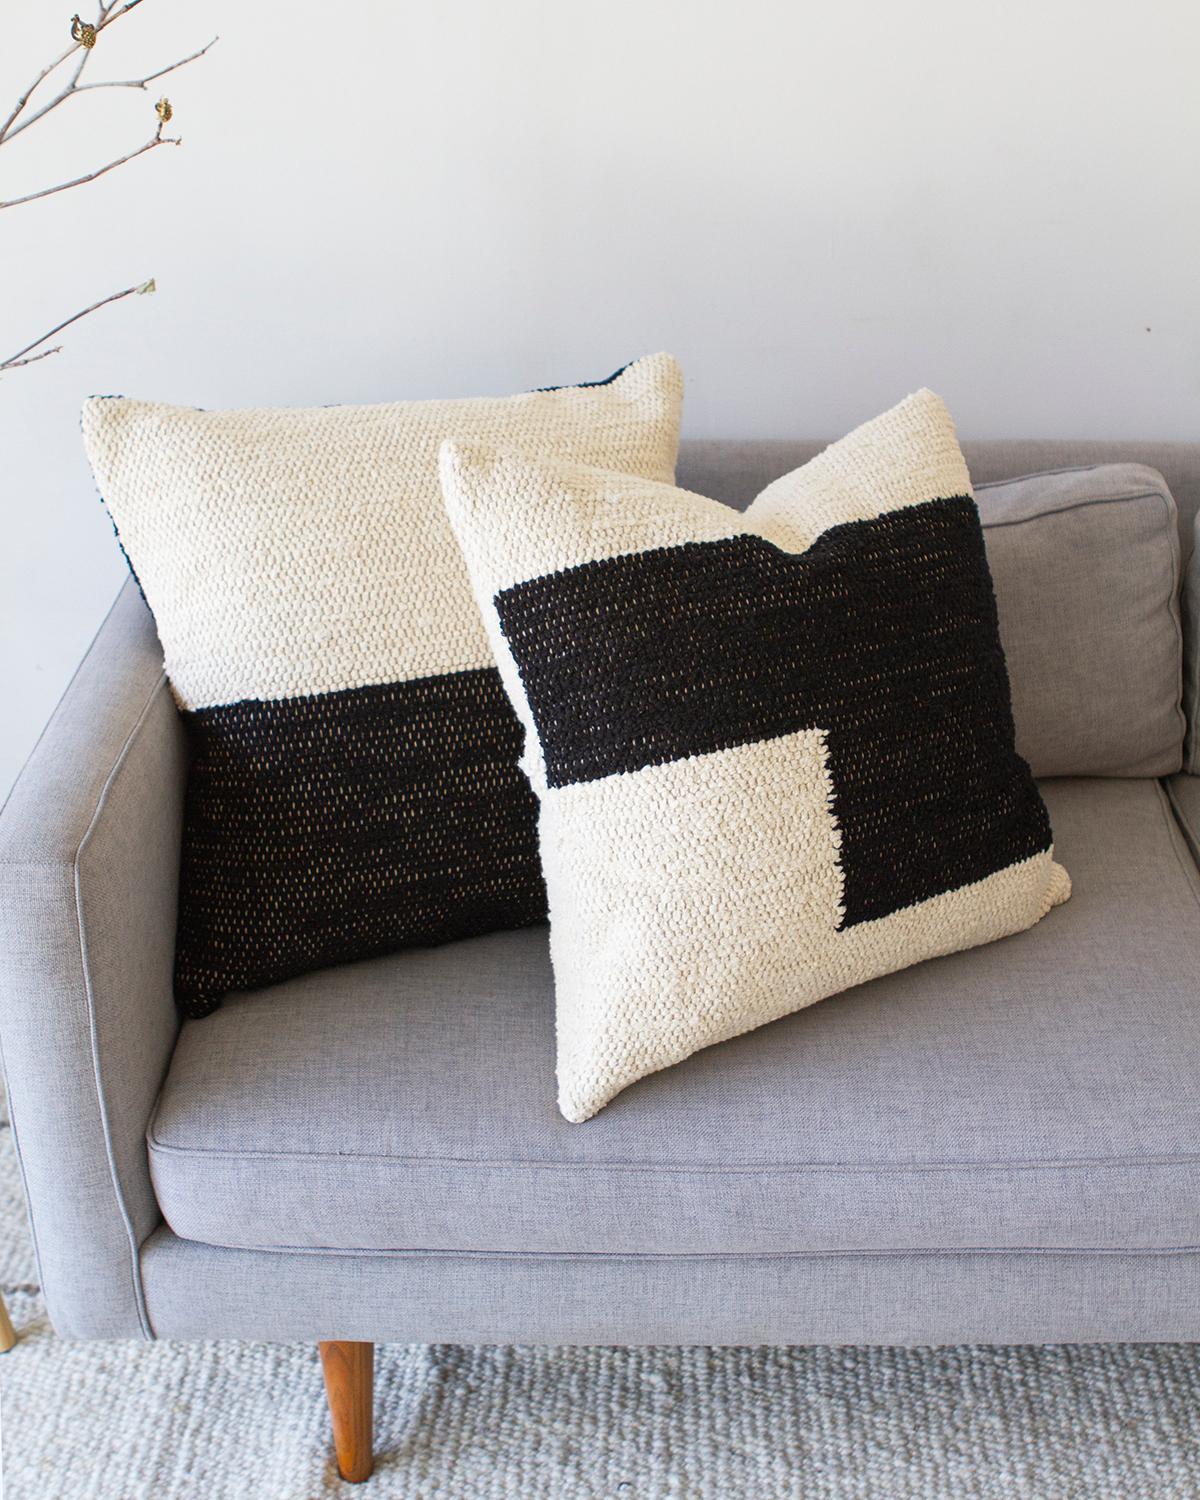 Un coussin géométrique texturé pour votre canapé ou votre lit. Ce coussin jeté en coton noir et crème est fabriqué à partir de ce coton tissé à la main et est parfait pour une zone à fort trafic comme le canapé du salon. Placez deux coussins